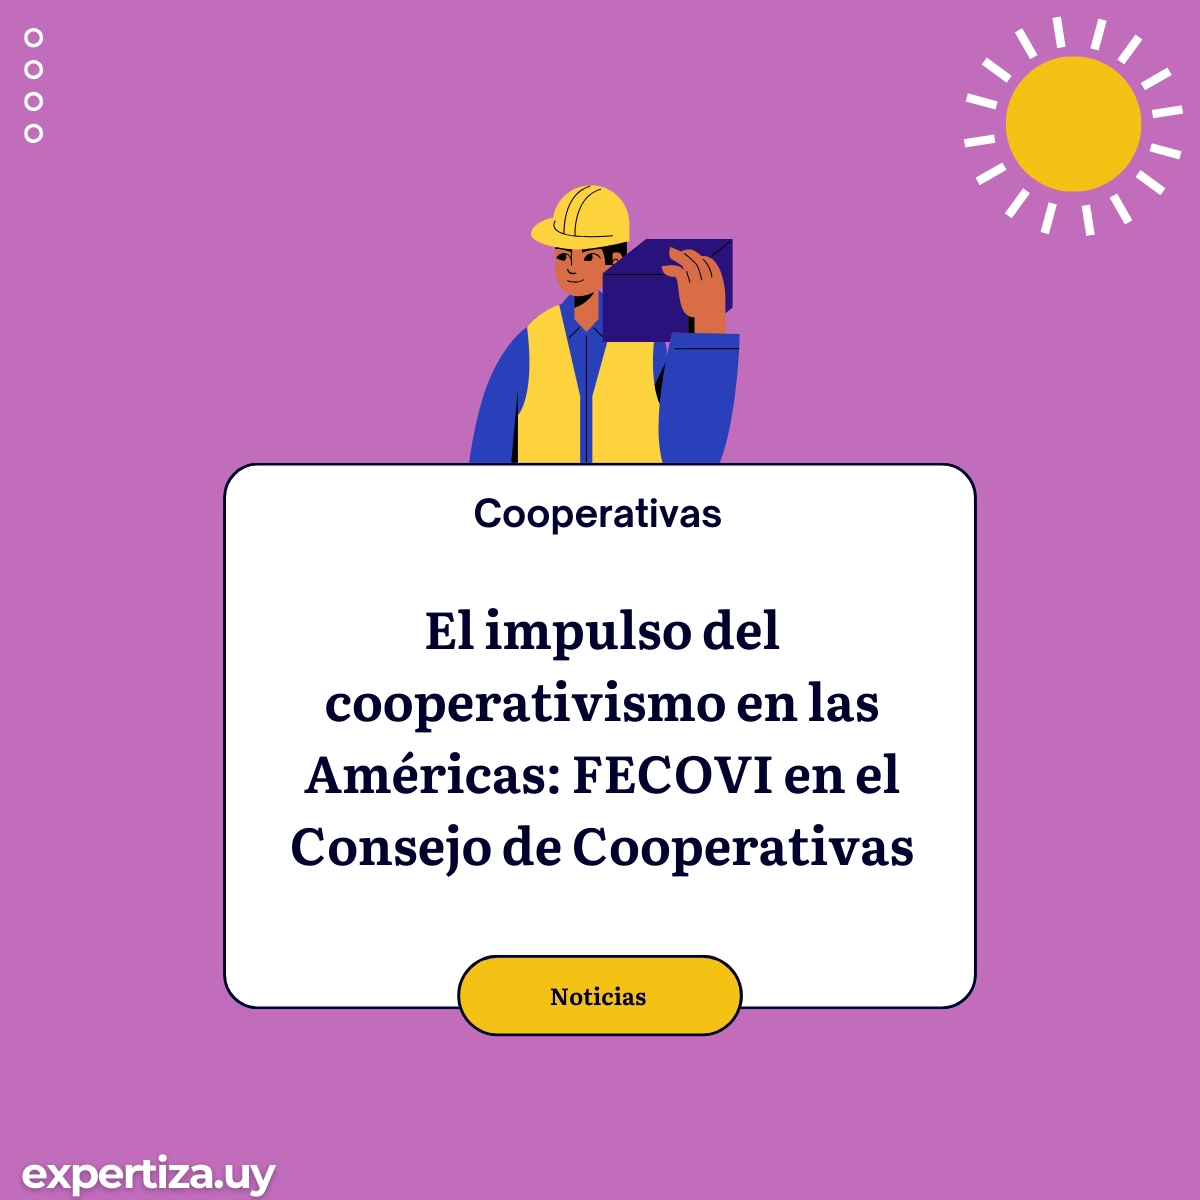 El impulso del cooperativismo en las Américas: FECOVI en el Consejo de Cooperativas.